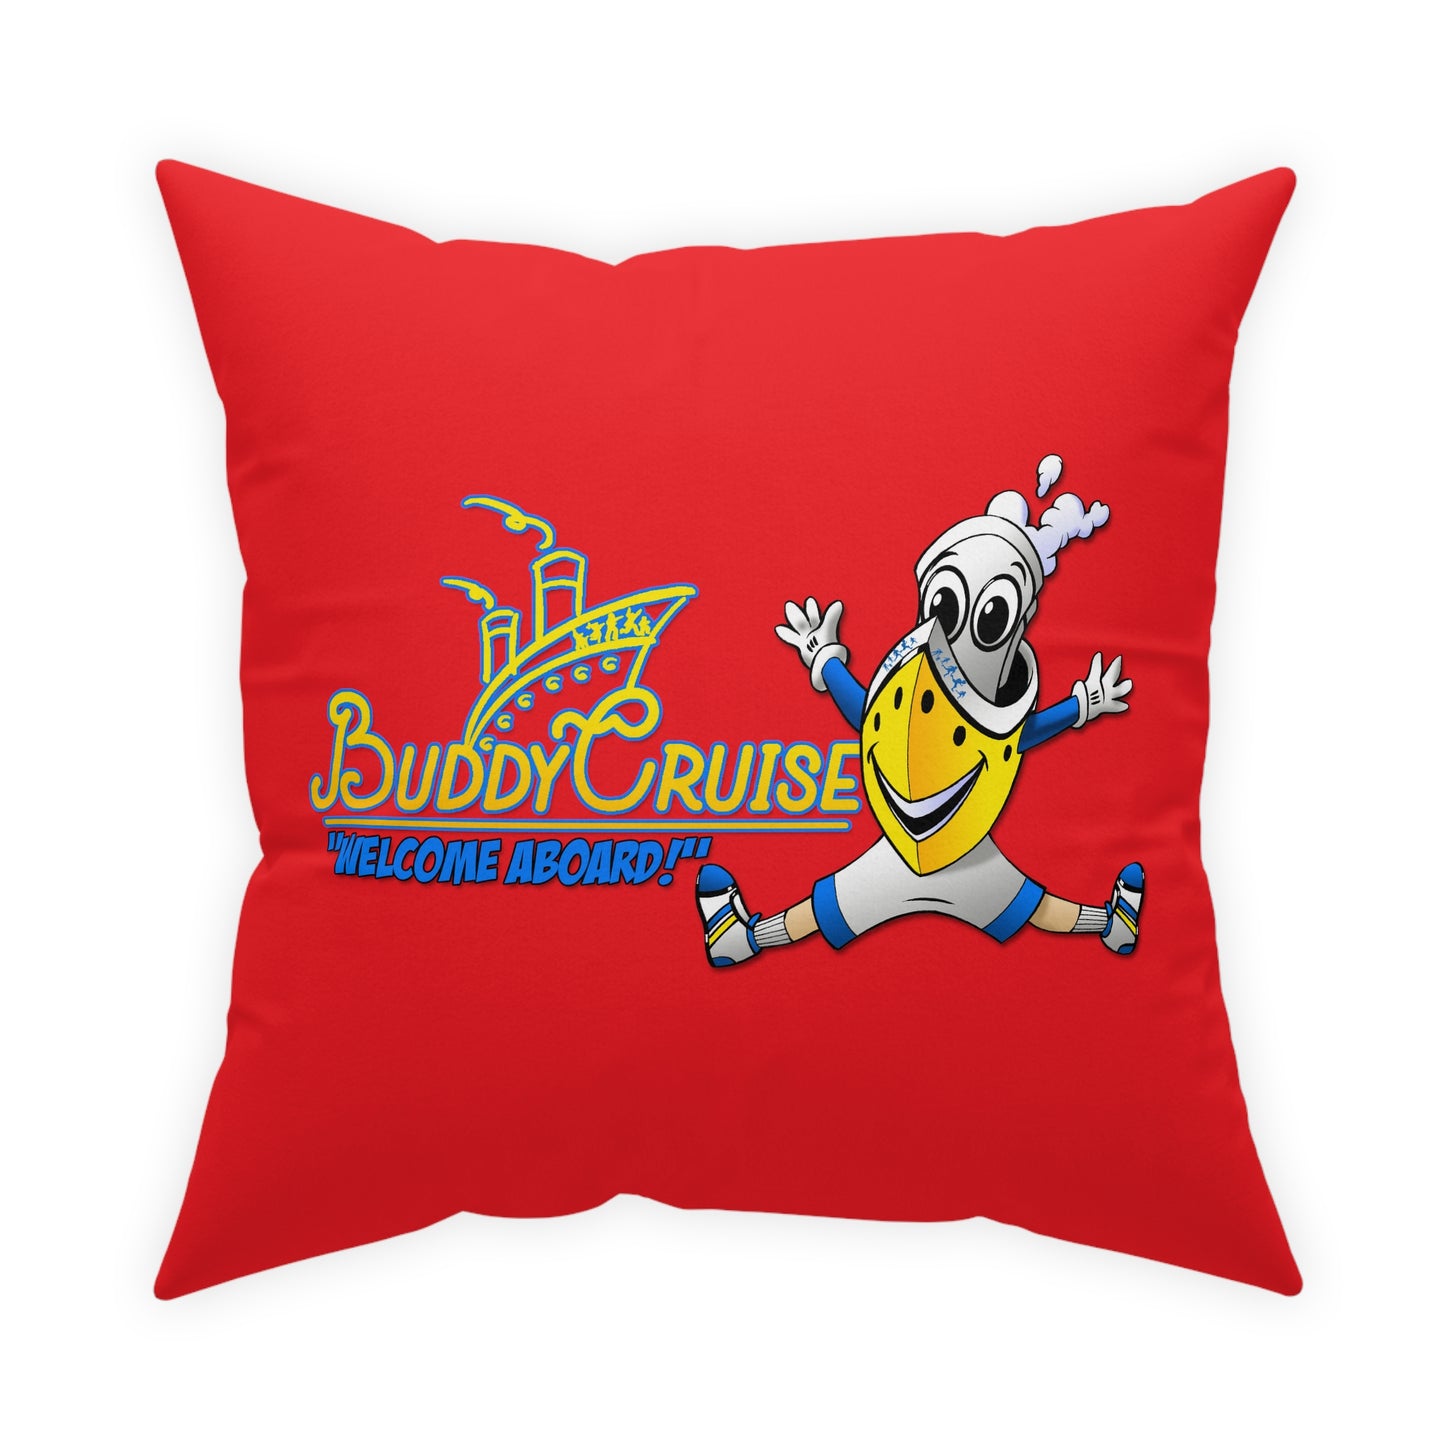 BUDDY CRUISE Buddy Red Pillow 4 Sizes